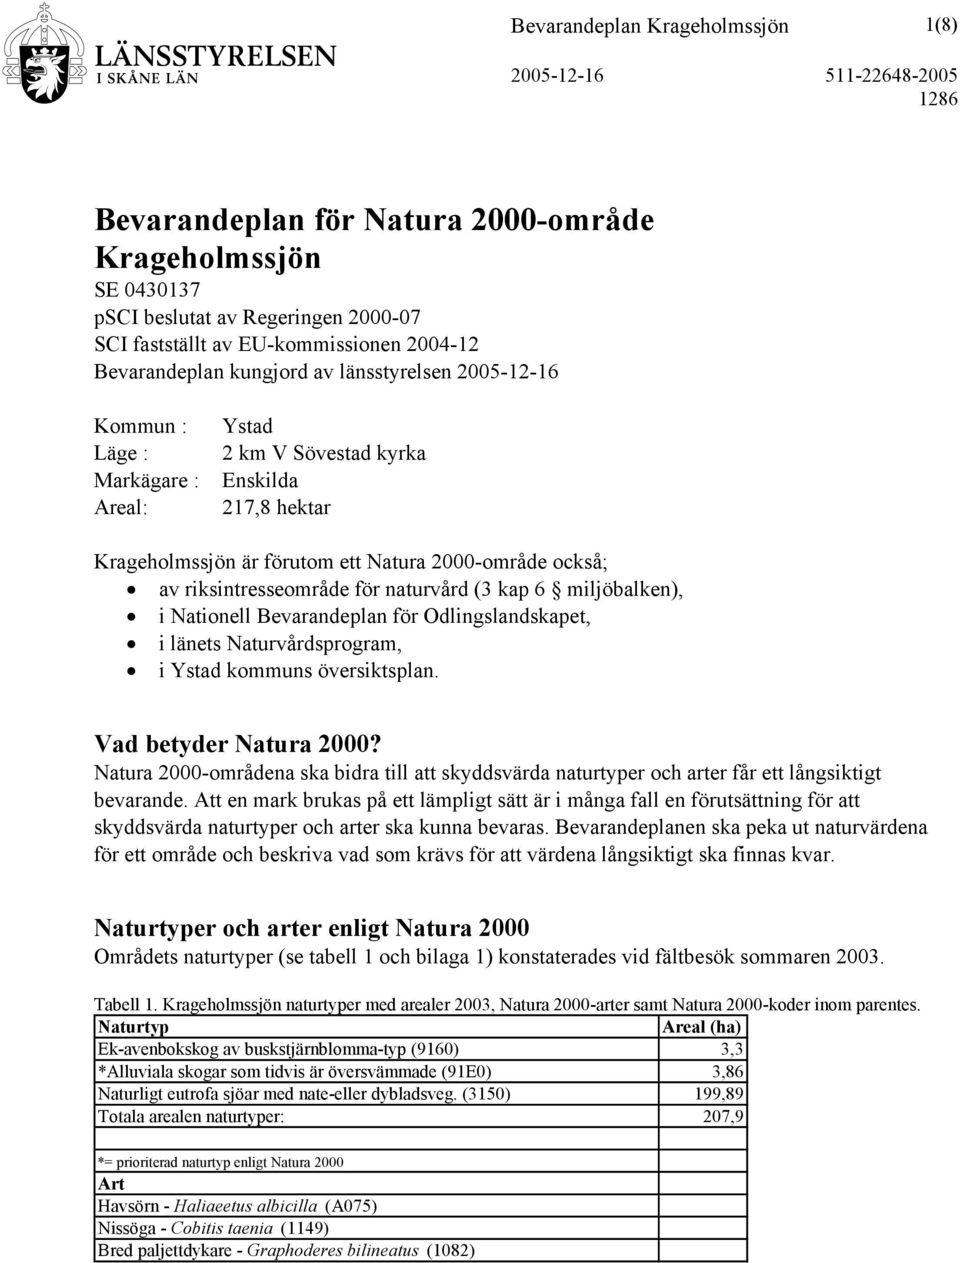 naturvård (3 kap 6 miljöbalken), i Nationell Bevarandeplan för Odlingslandskapet, i länets Naturvårdsprogram, i Ystad kommuns översiktsplan. Vad betyder Natura 2000?